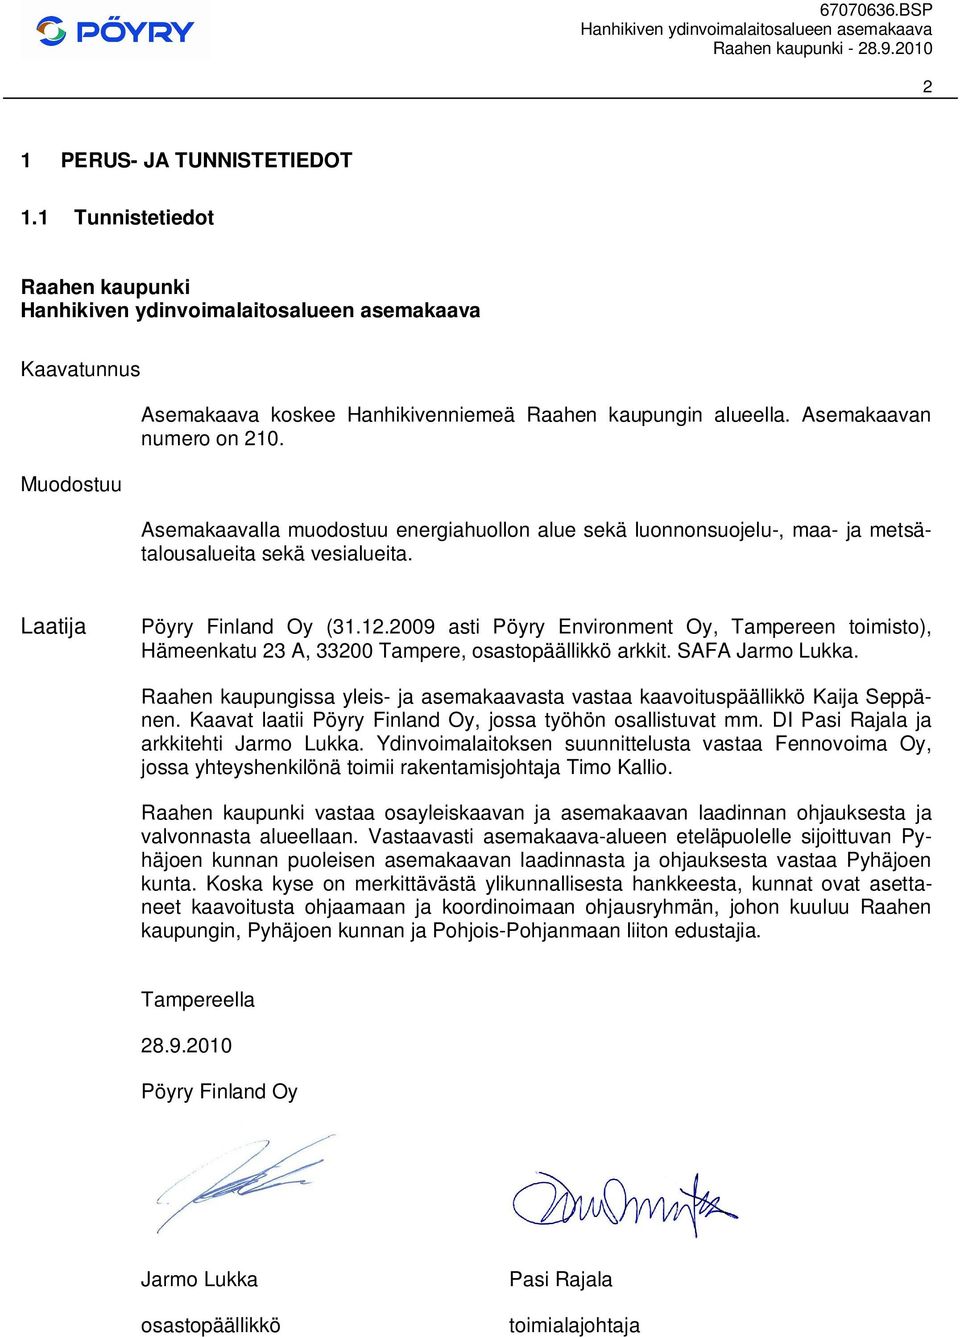 2009 asti Pöyry Environment Oy, Tampereen toimisto), Hämeenkatu 23 A, 33200 Tampere, osastopäällikkö arkkit. SAFA Jarmo Lukka.